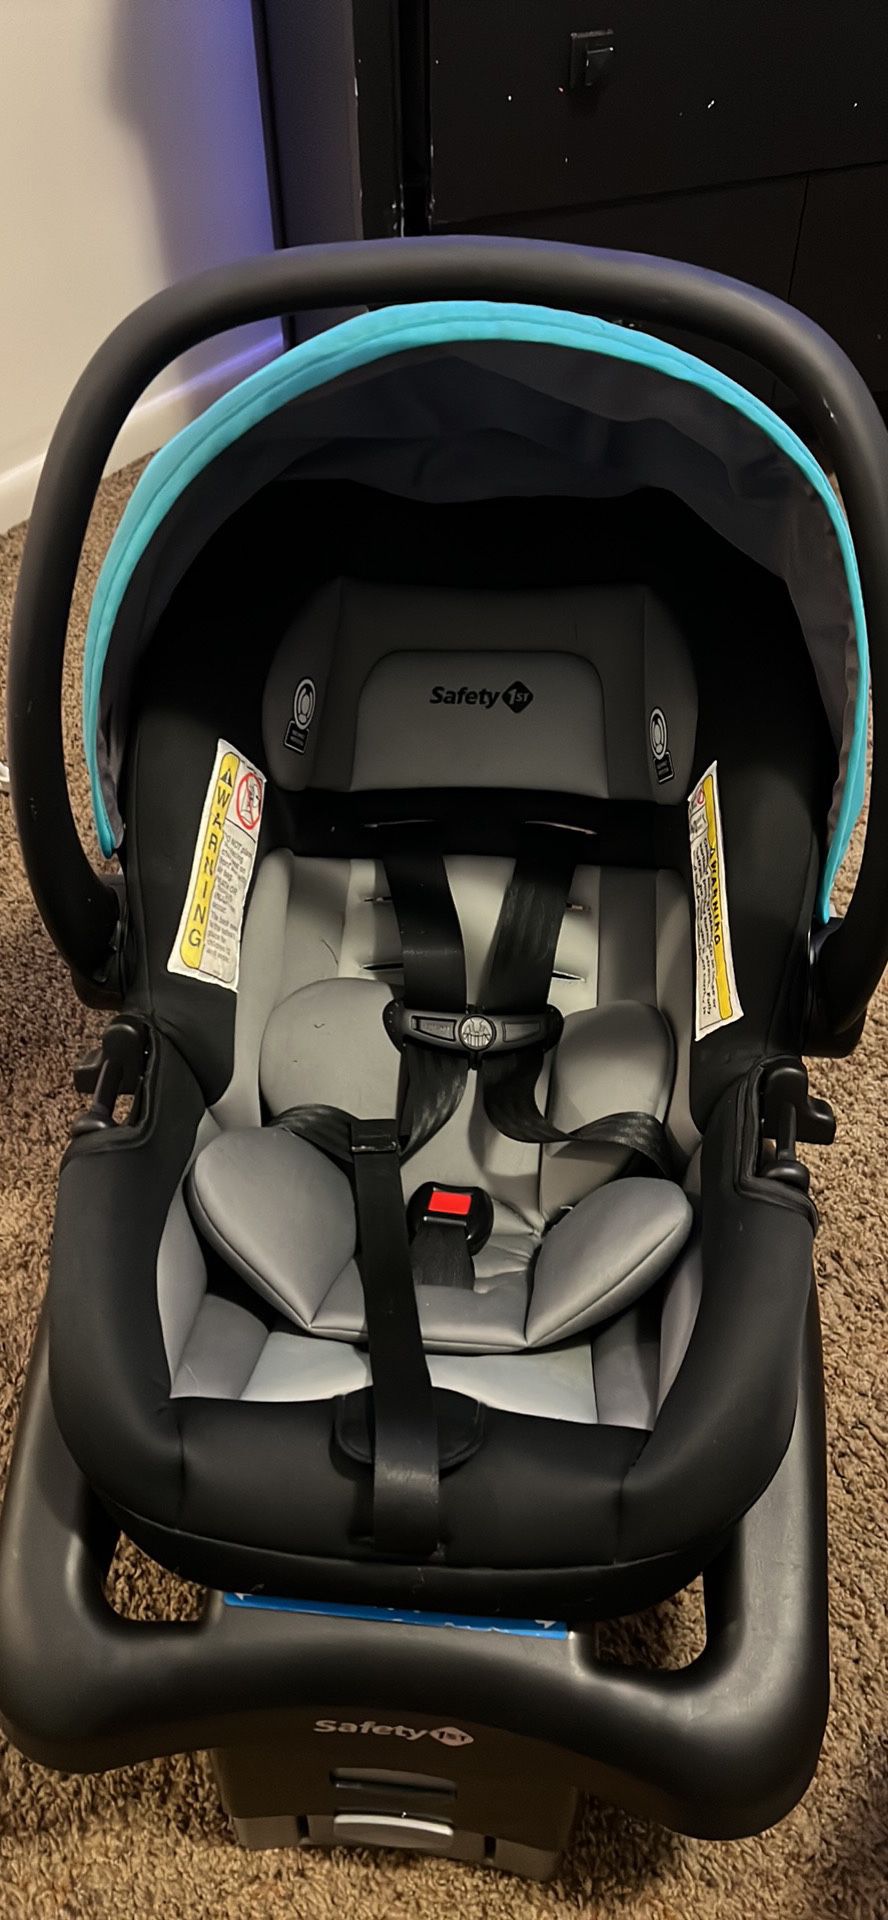 safety 1st Comfort 35 infant car seat, Blue Streak